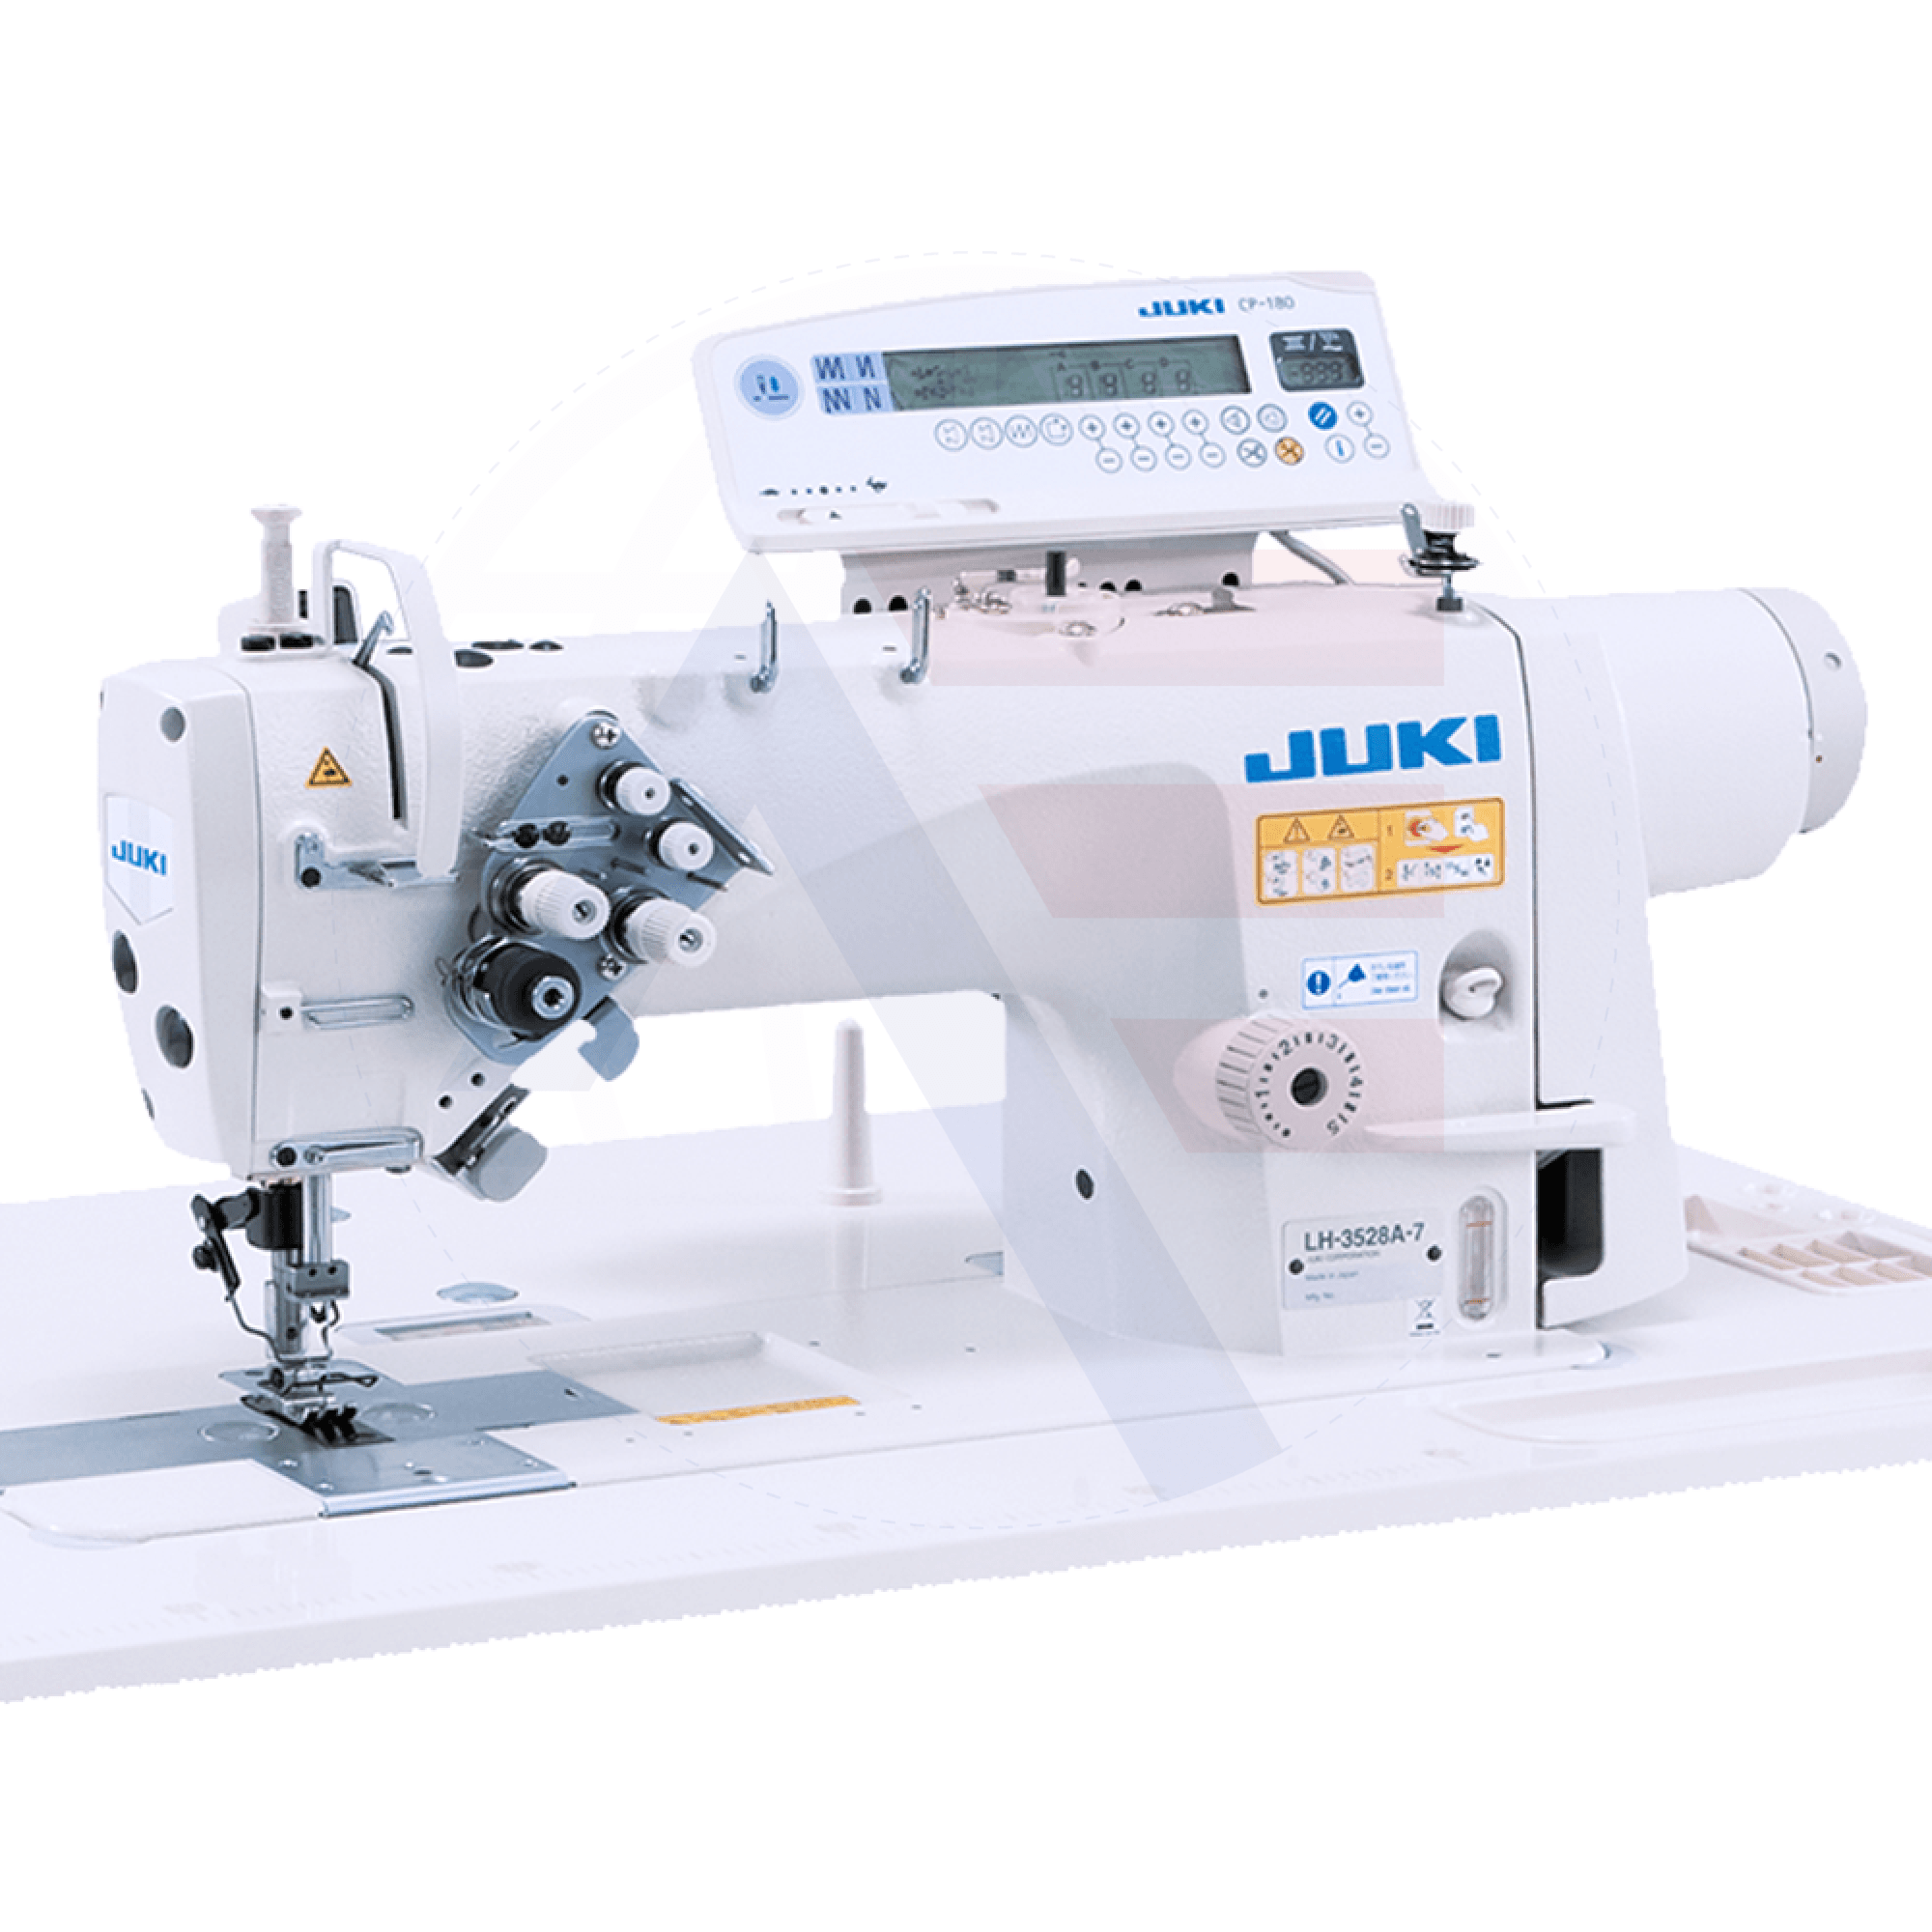 Juki Lh-3528A 2-Needle Lockstitch Machine Sewing Machines